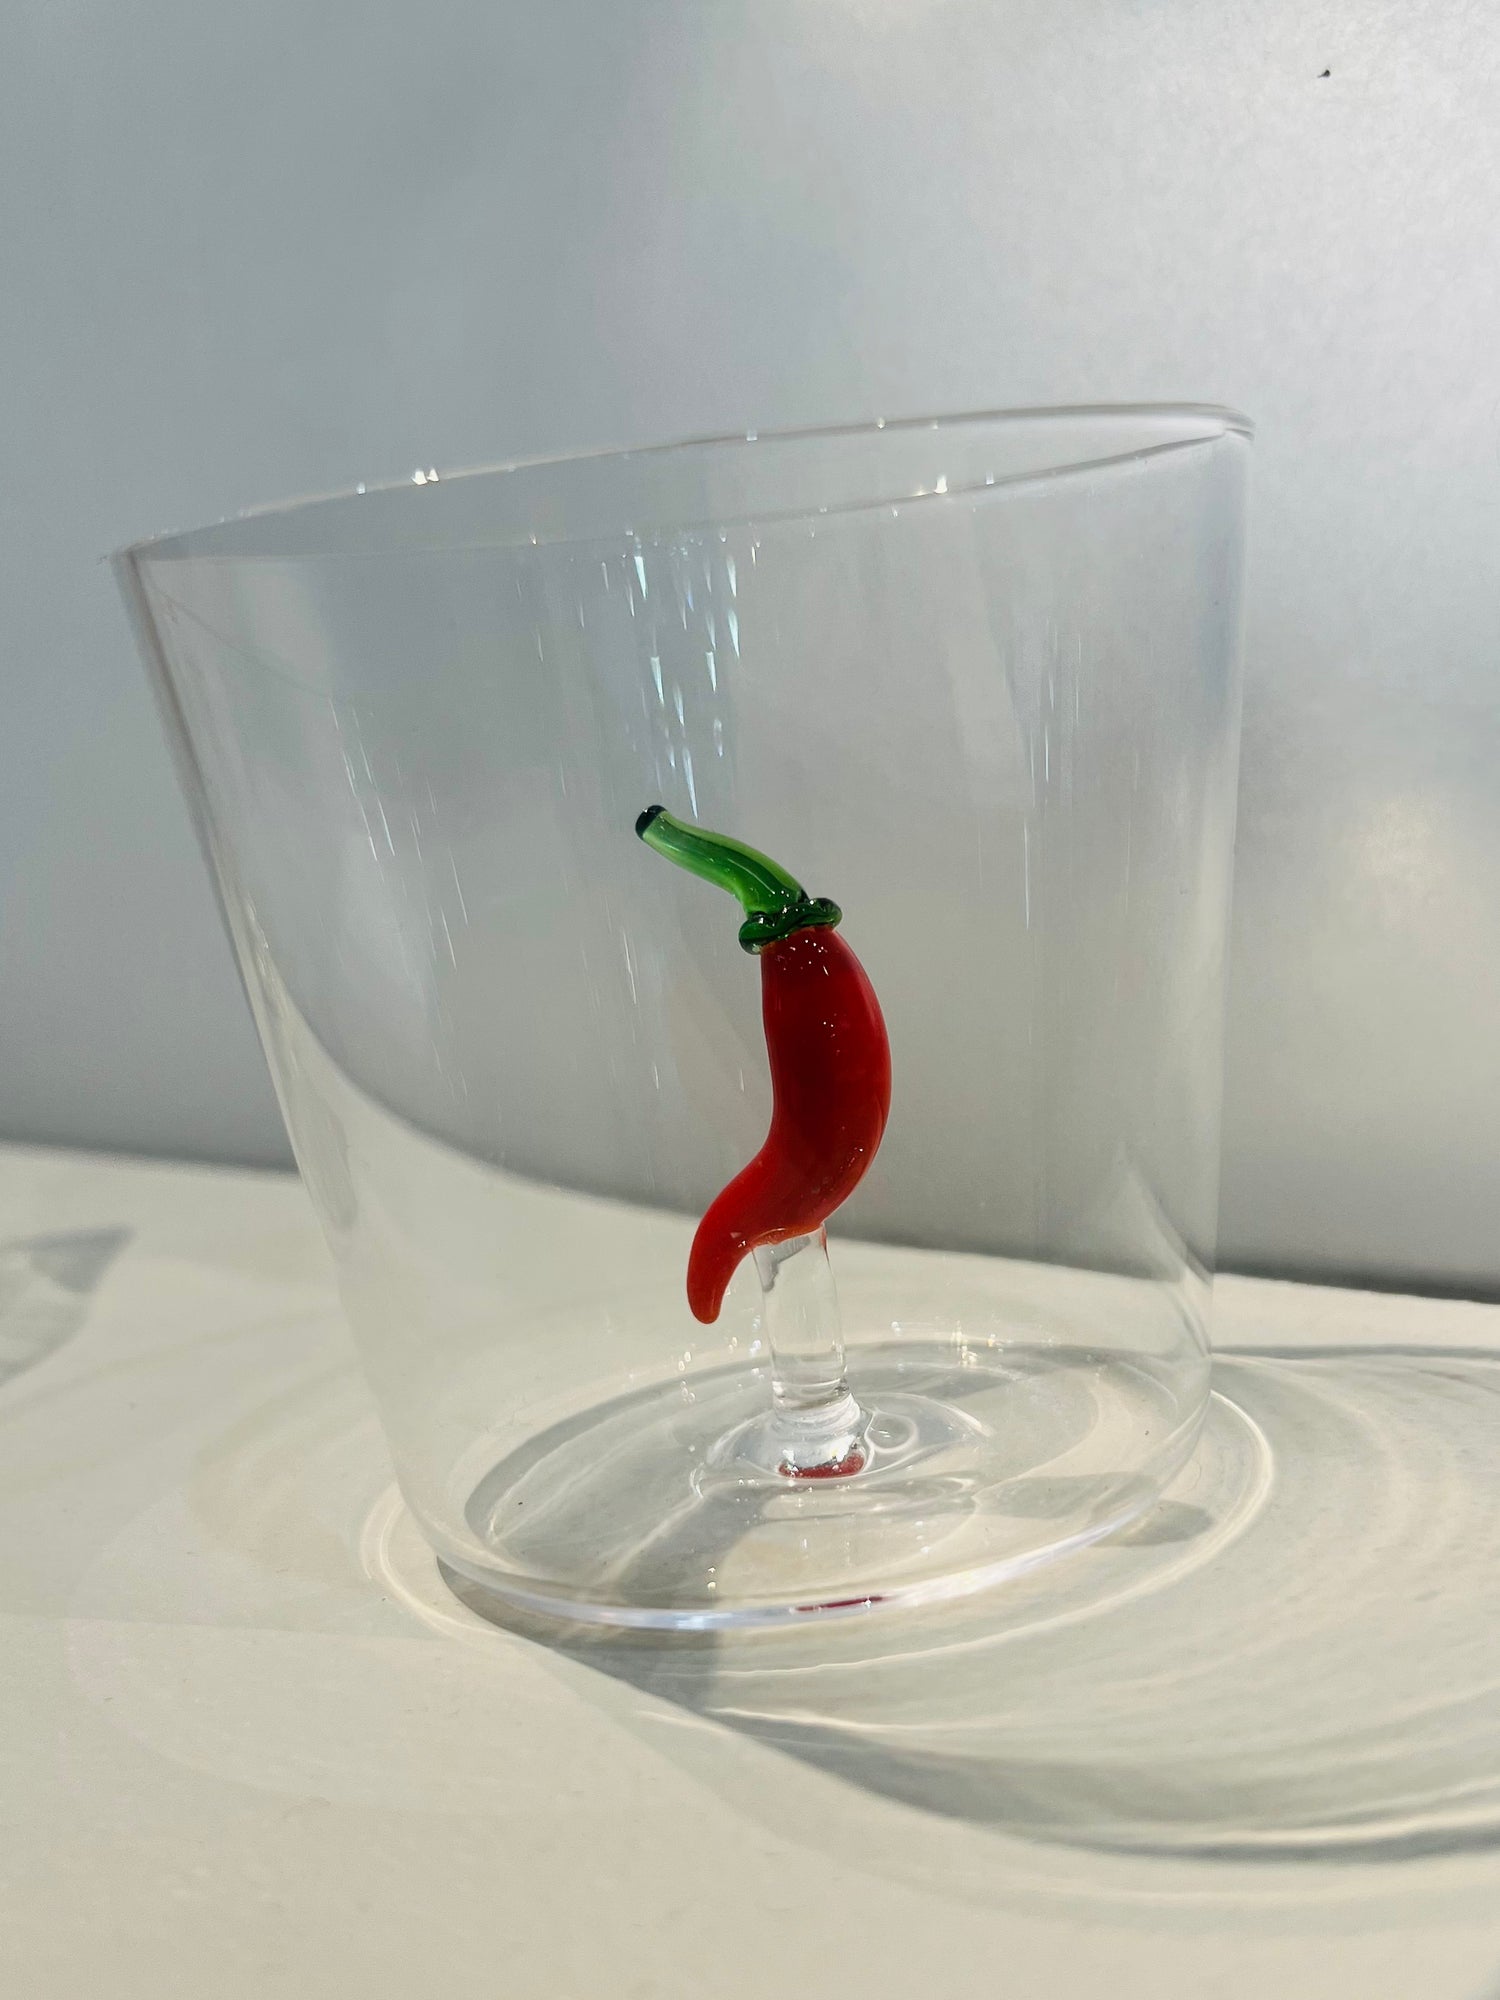 Chili pepper glass tumbler